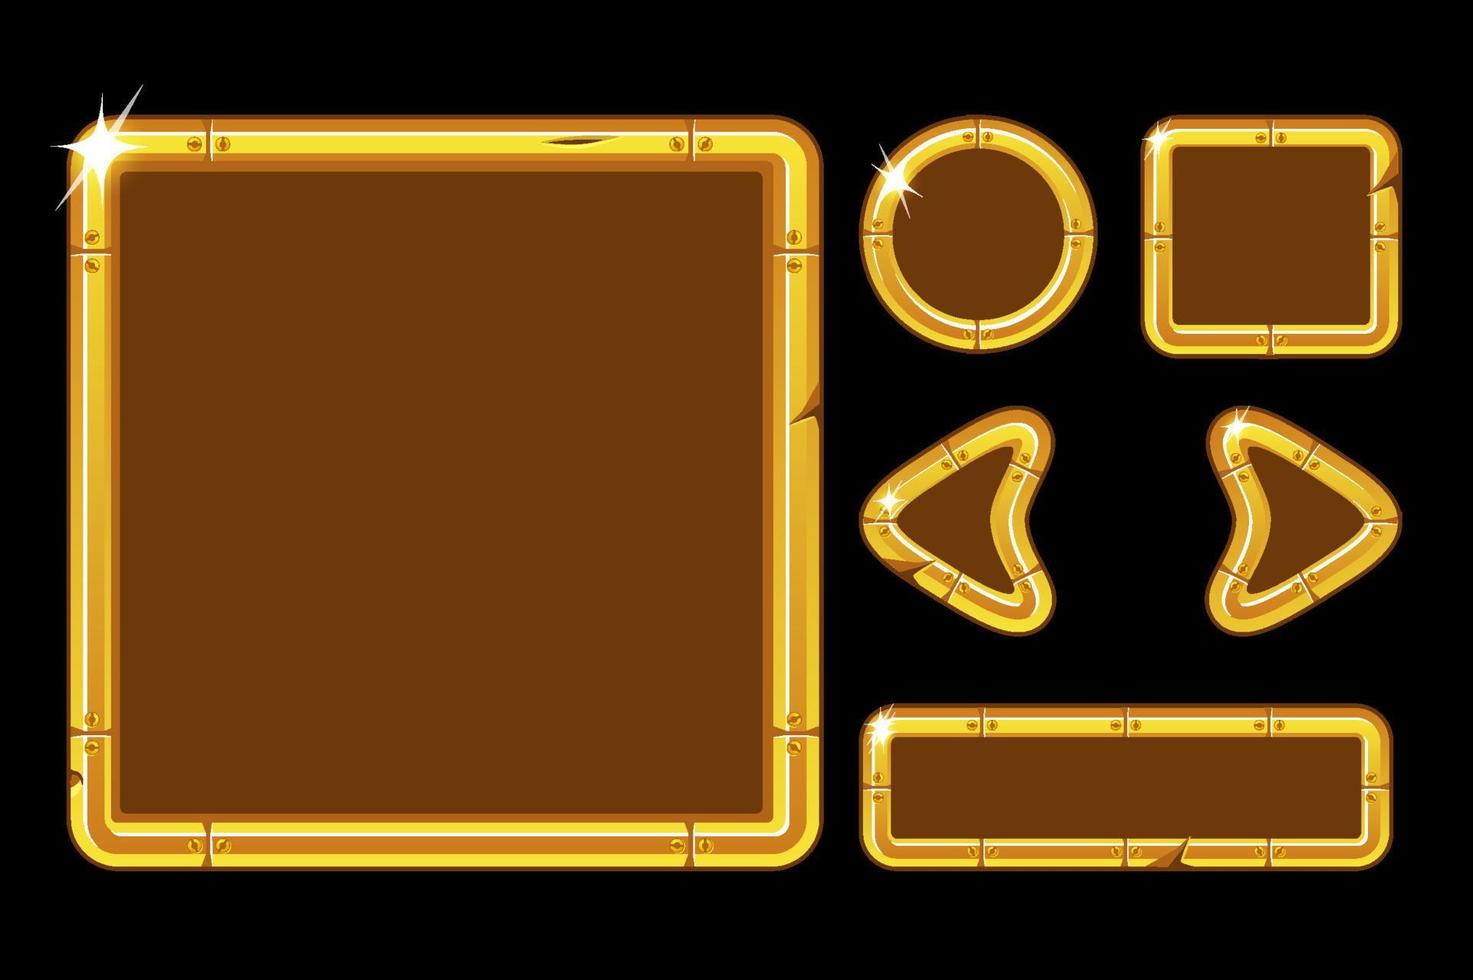 Vektor-Spiel-UI-Kit. goldene benutzeroberfläche für das spielmenü. goldfensterschnittstellenvorlage mit tasten, pfeilen. vektor